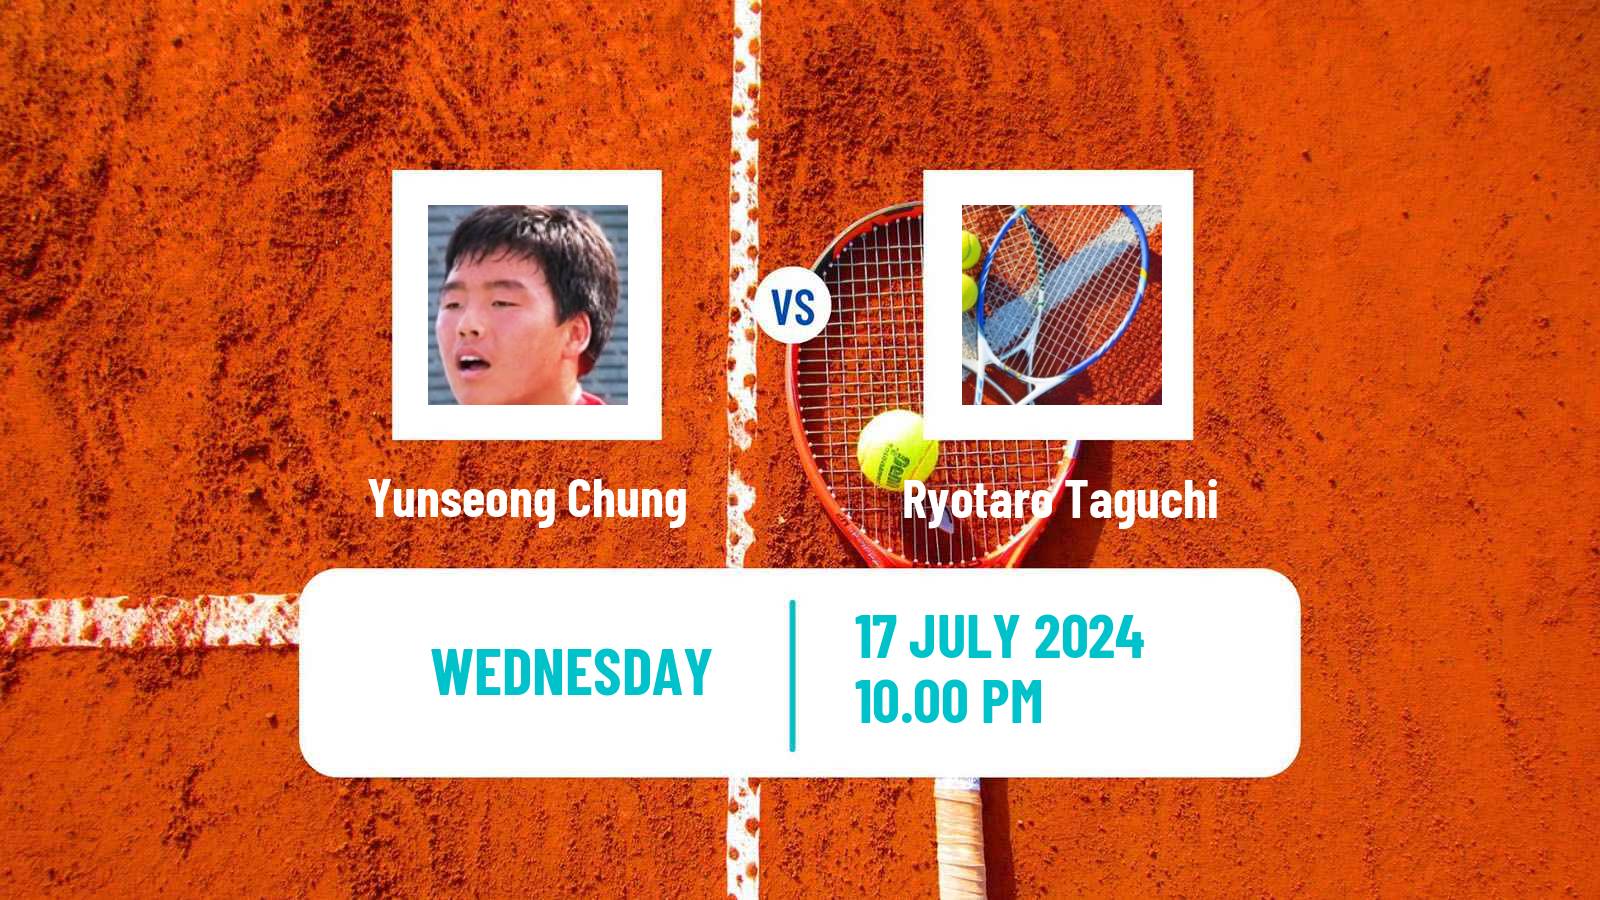 Tennis ITF M25 Tianjin 2 Men Yunseong Chung - Ryotaro Taguchi